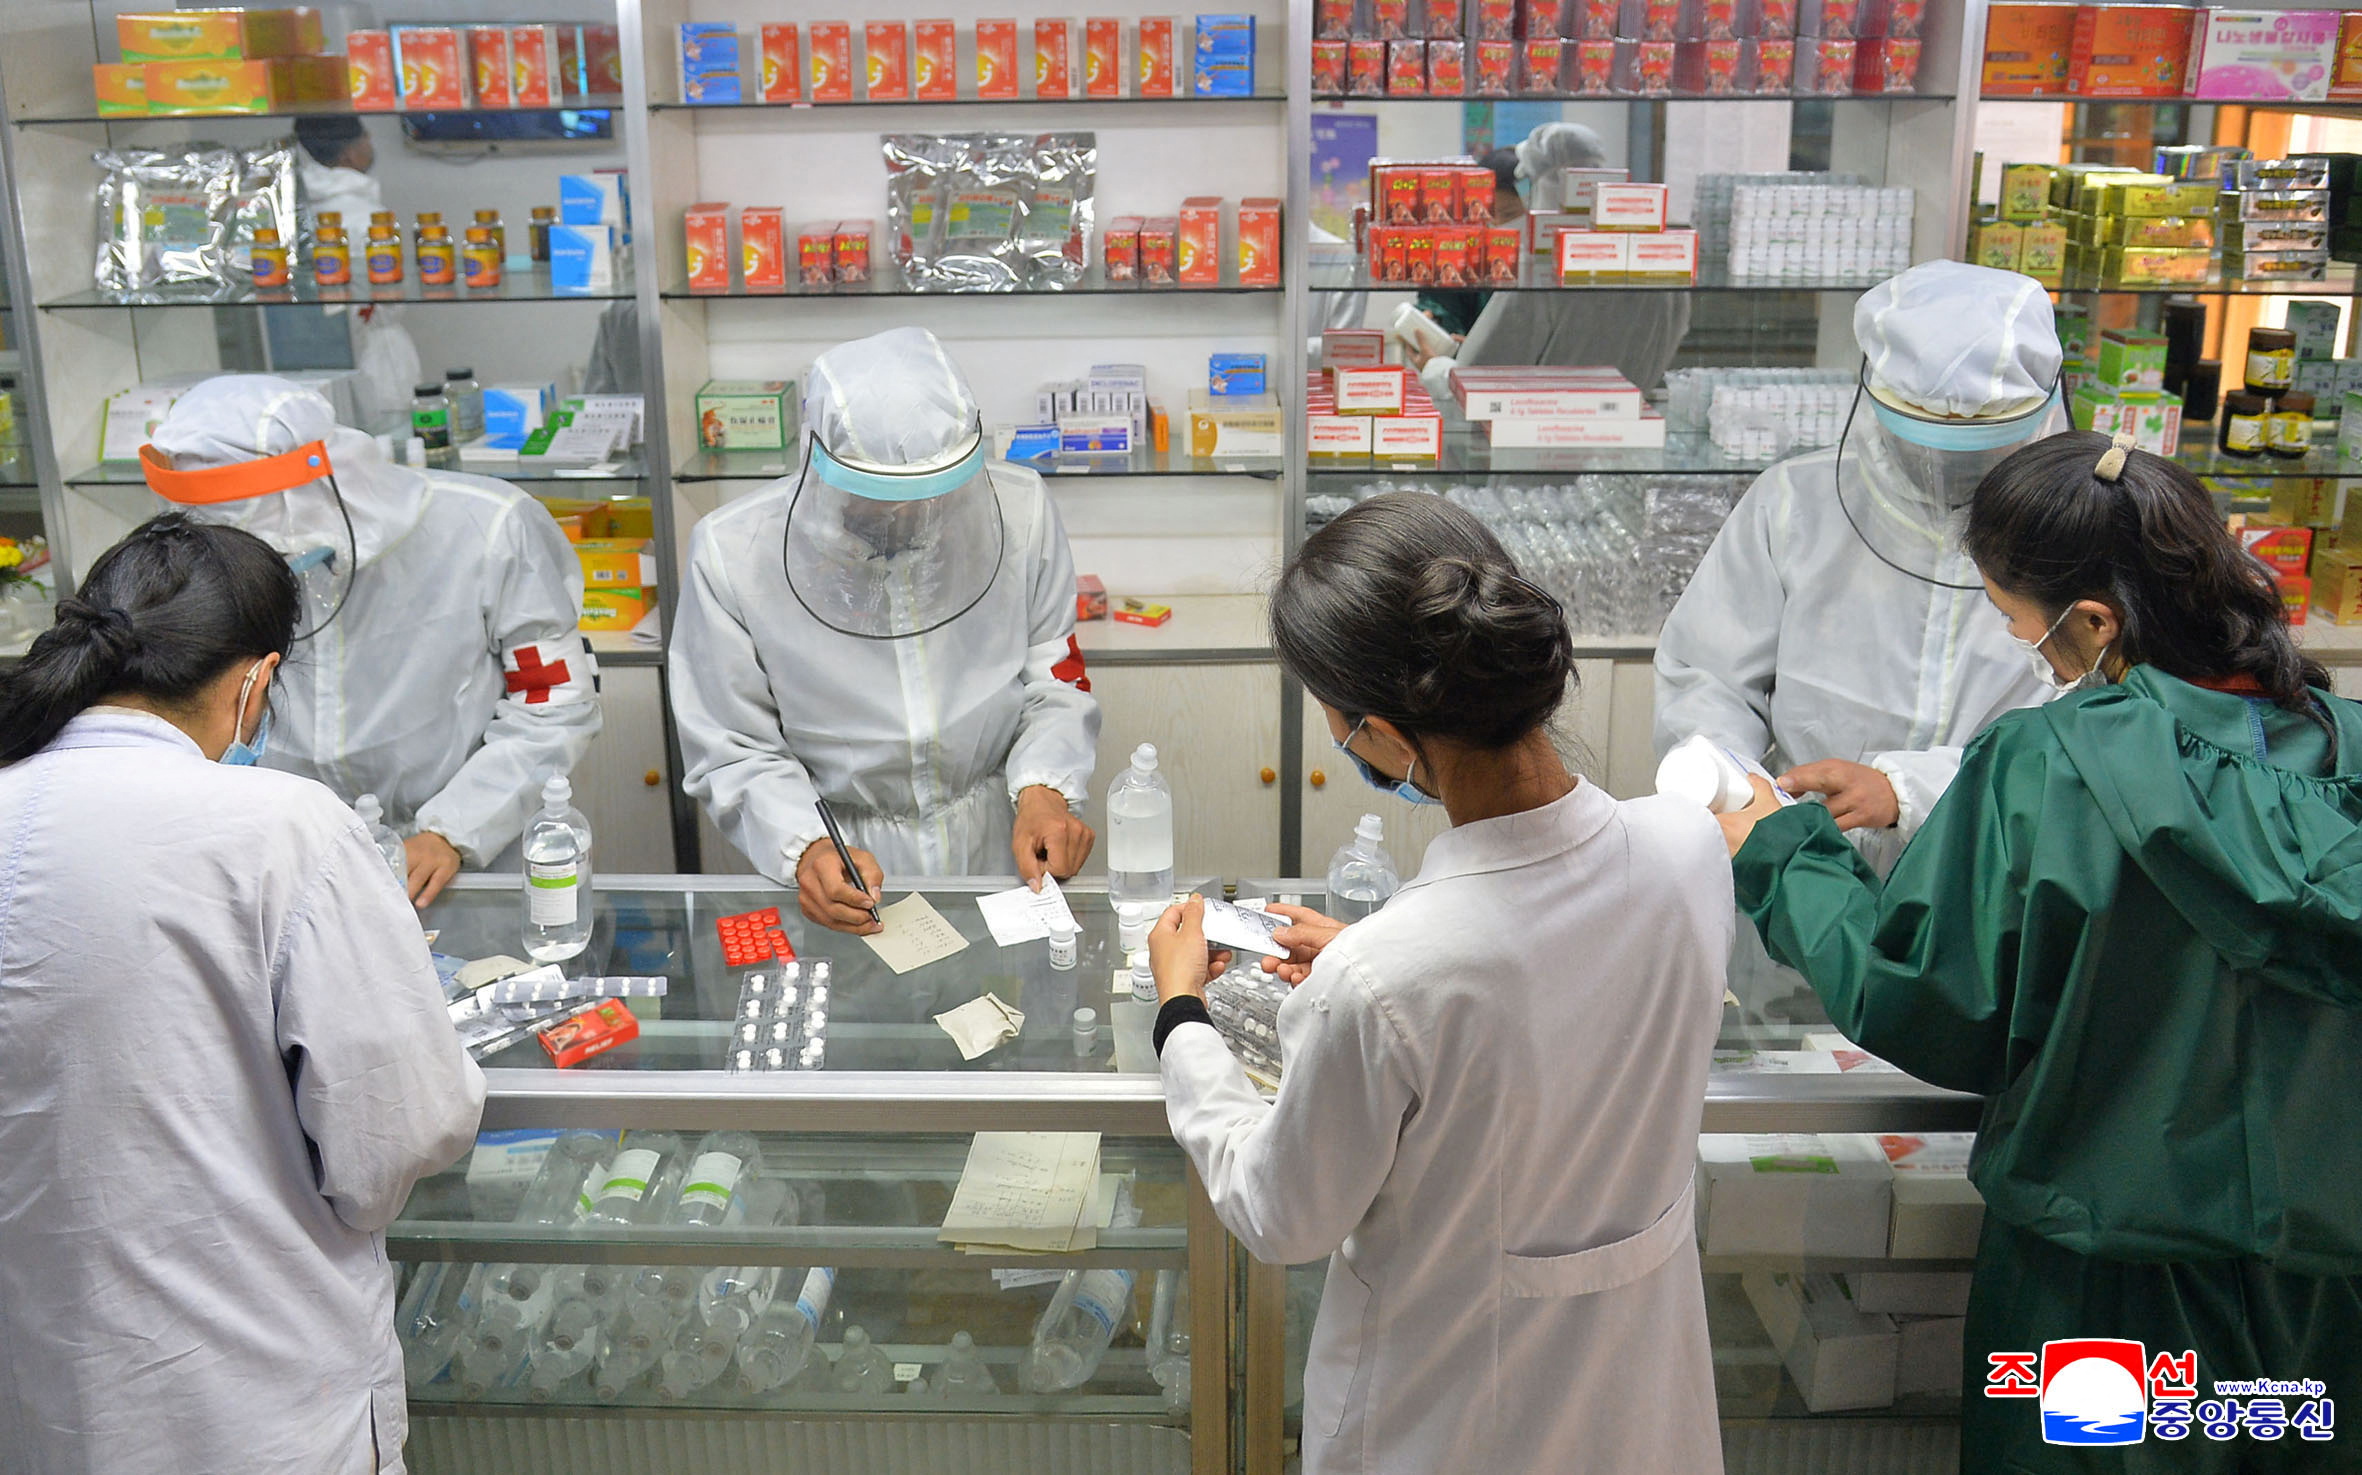 Médicos del ejército realizan labores de distribución de medicamentos en medio de la pandemia de COVID-19 en Pyongyang (Reuters)